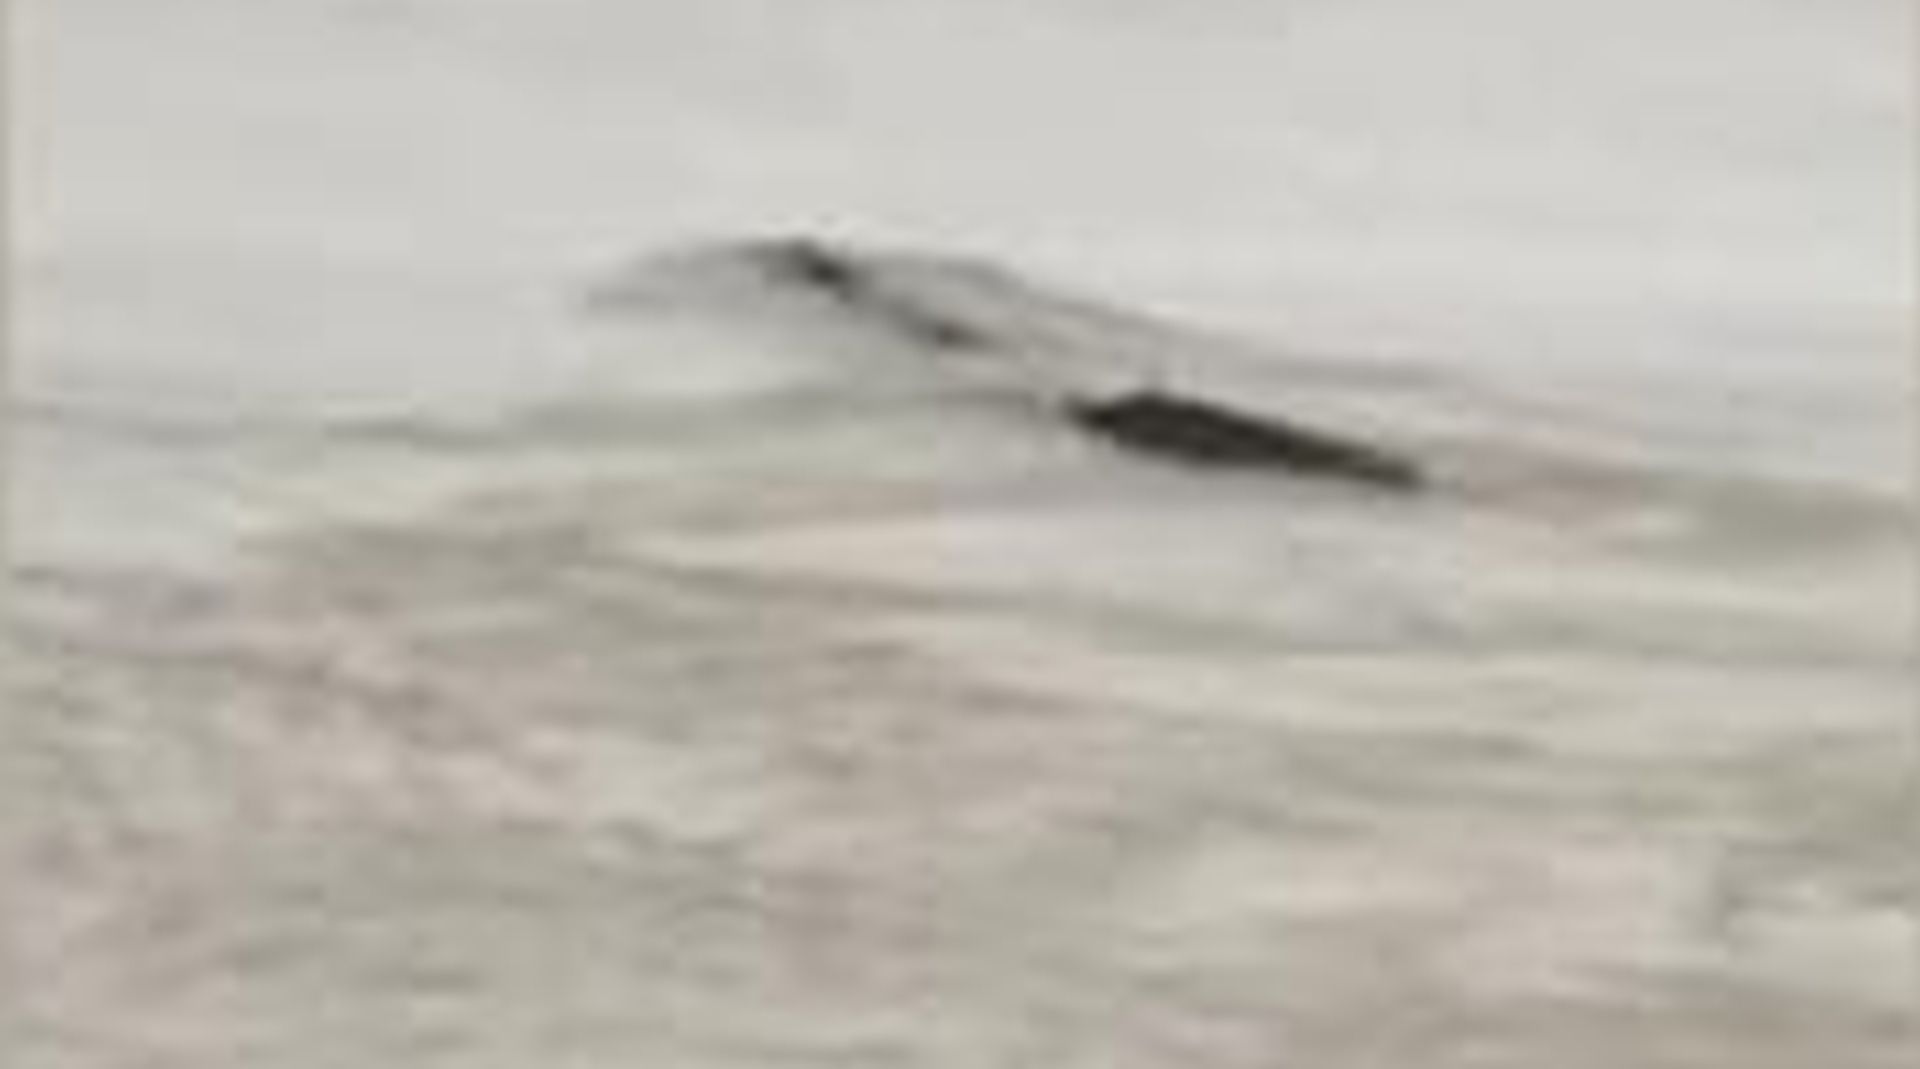 Kínai „Loch Ness-i szörnyet” láttak a Jangce-folyóban